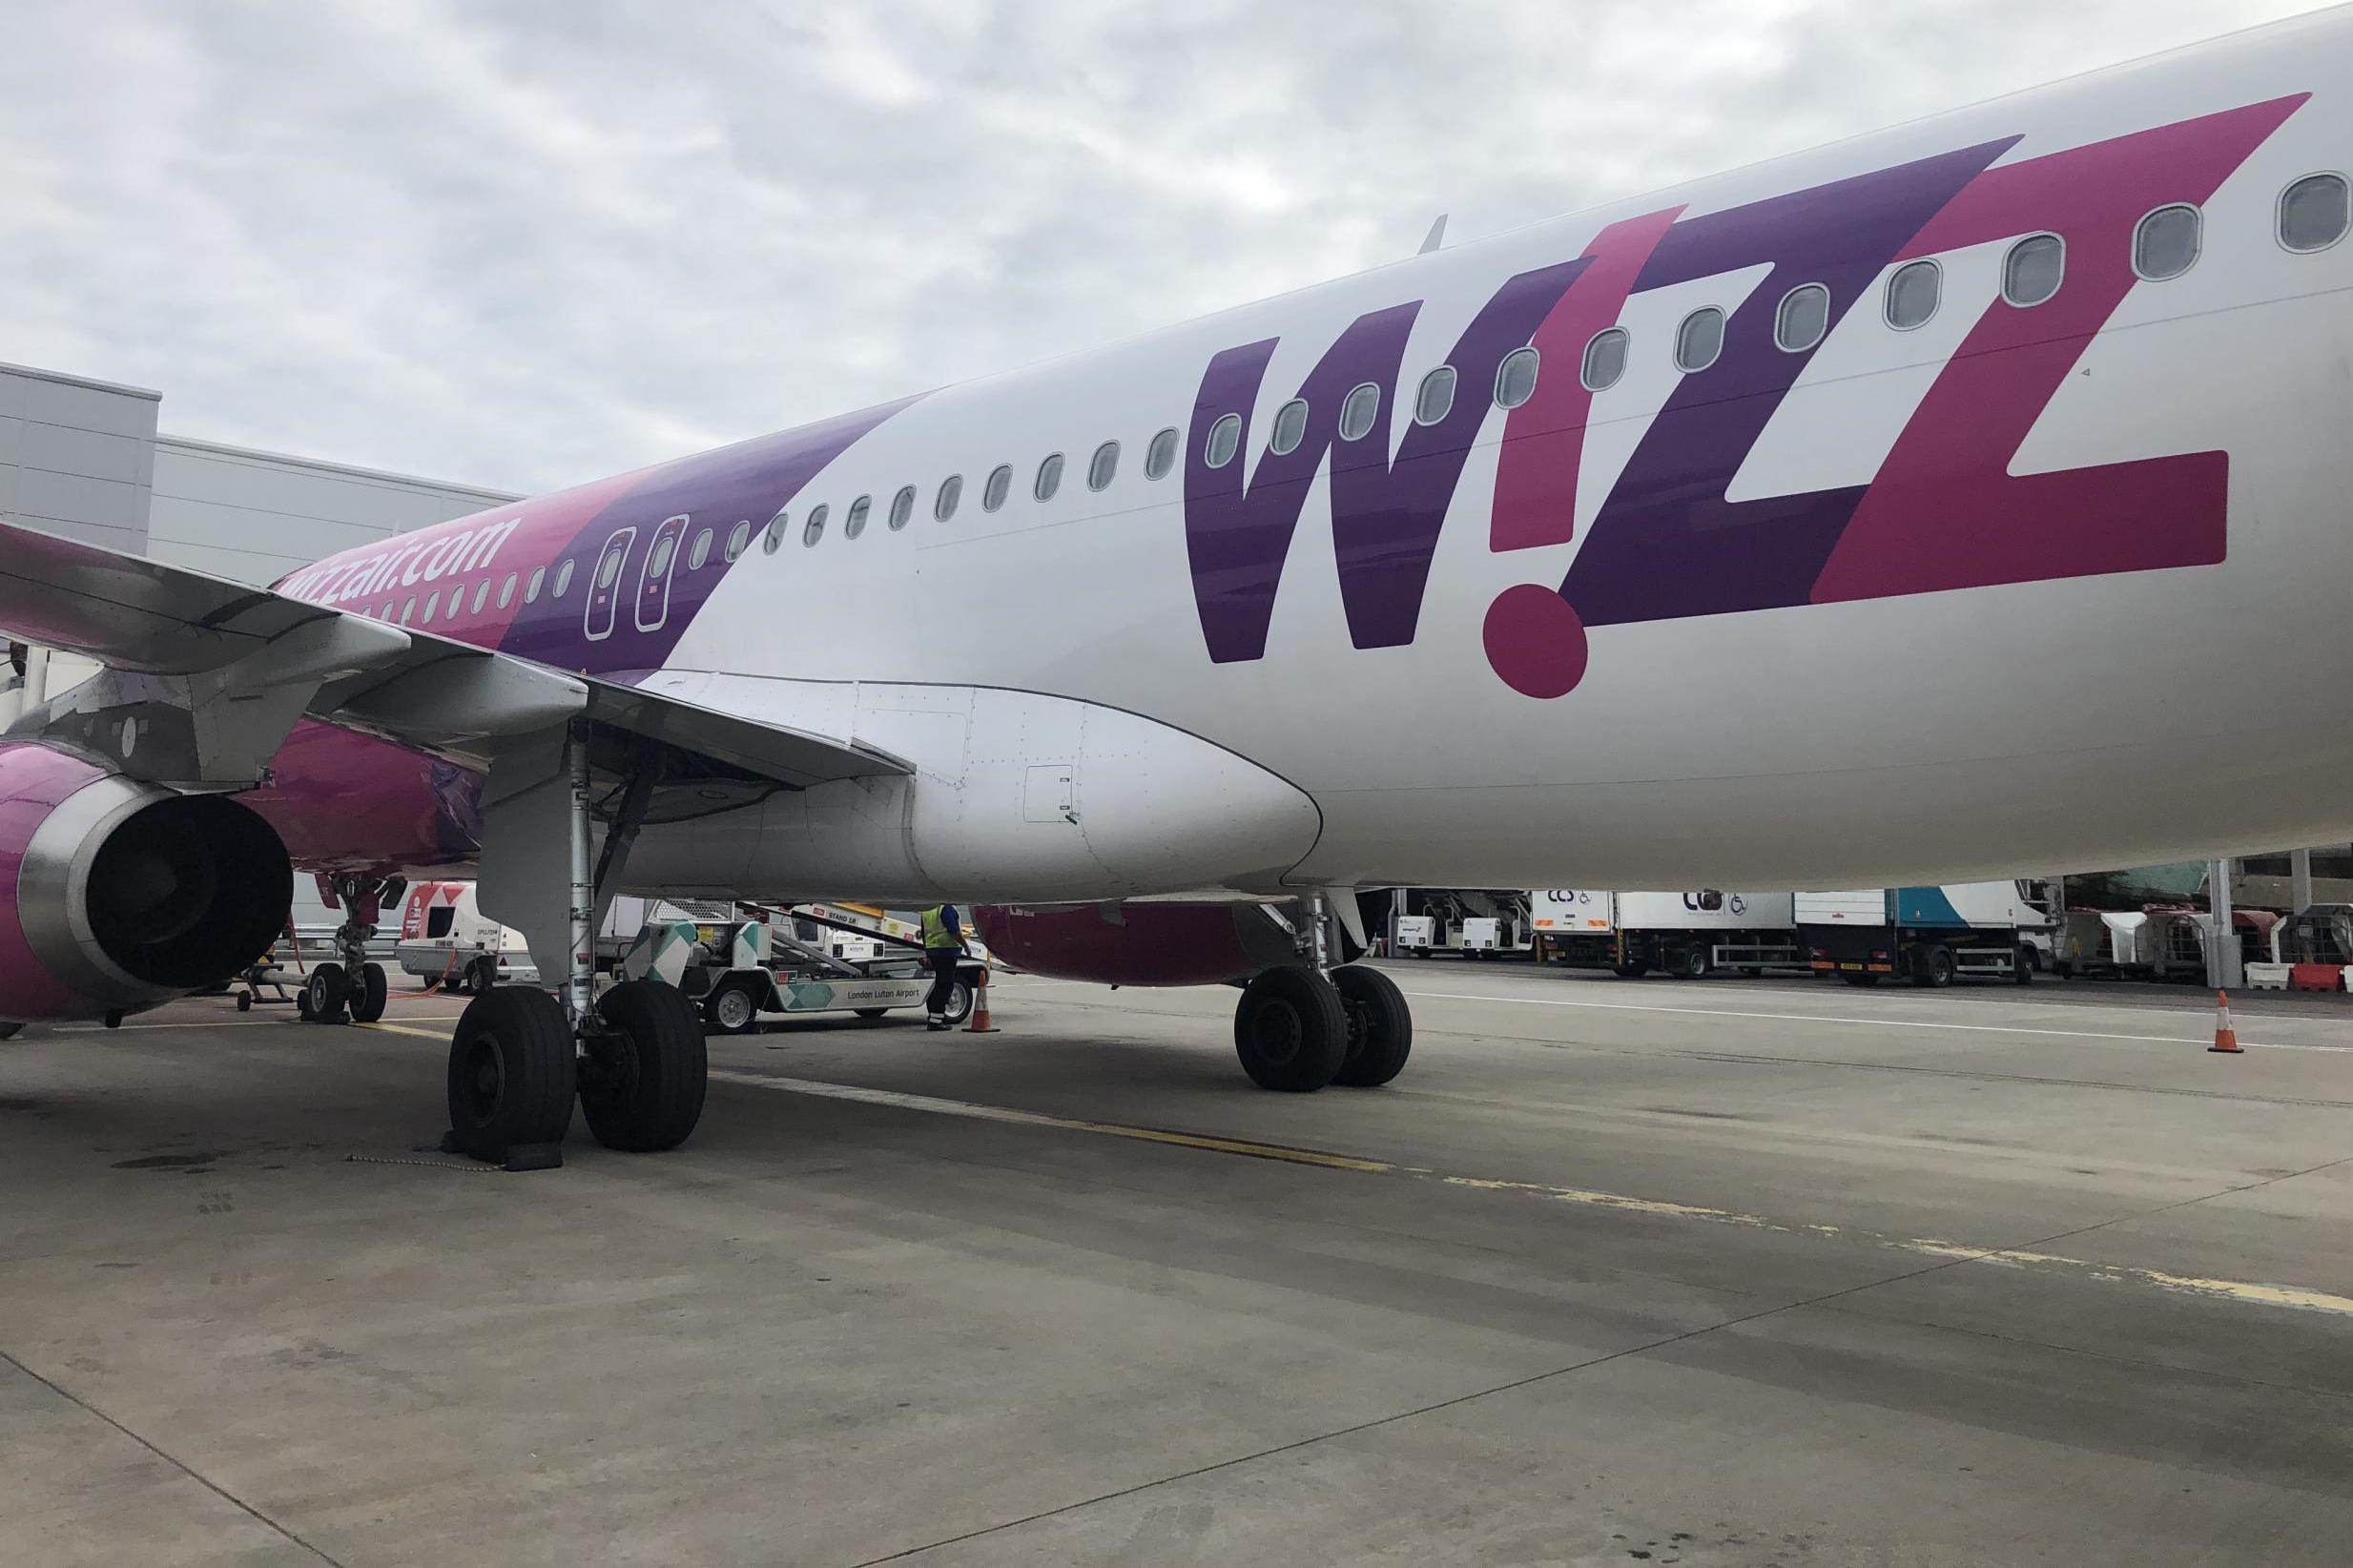 Homeward bound: Wizz Air plane at Luton airport